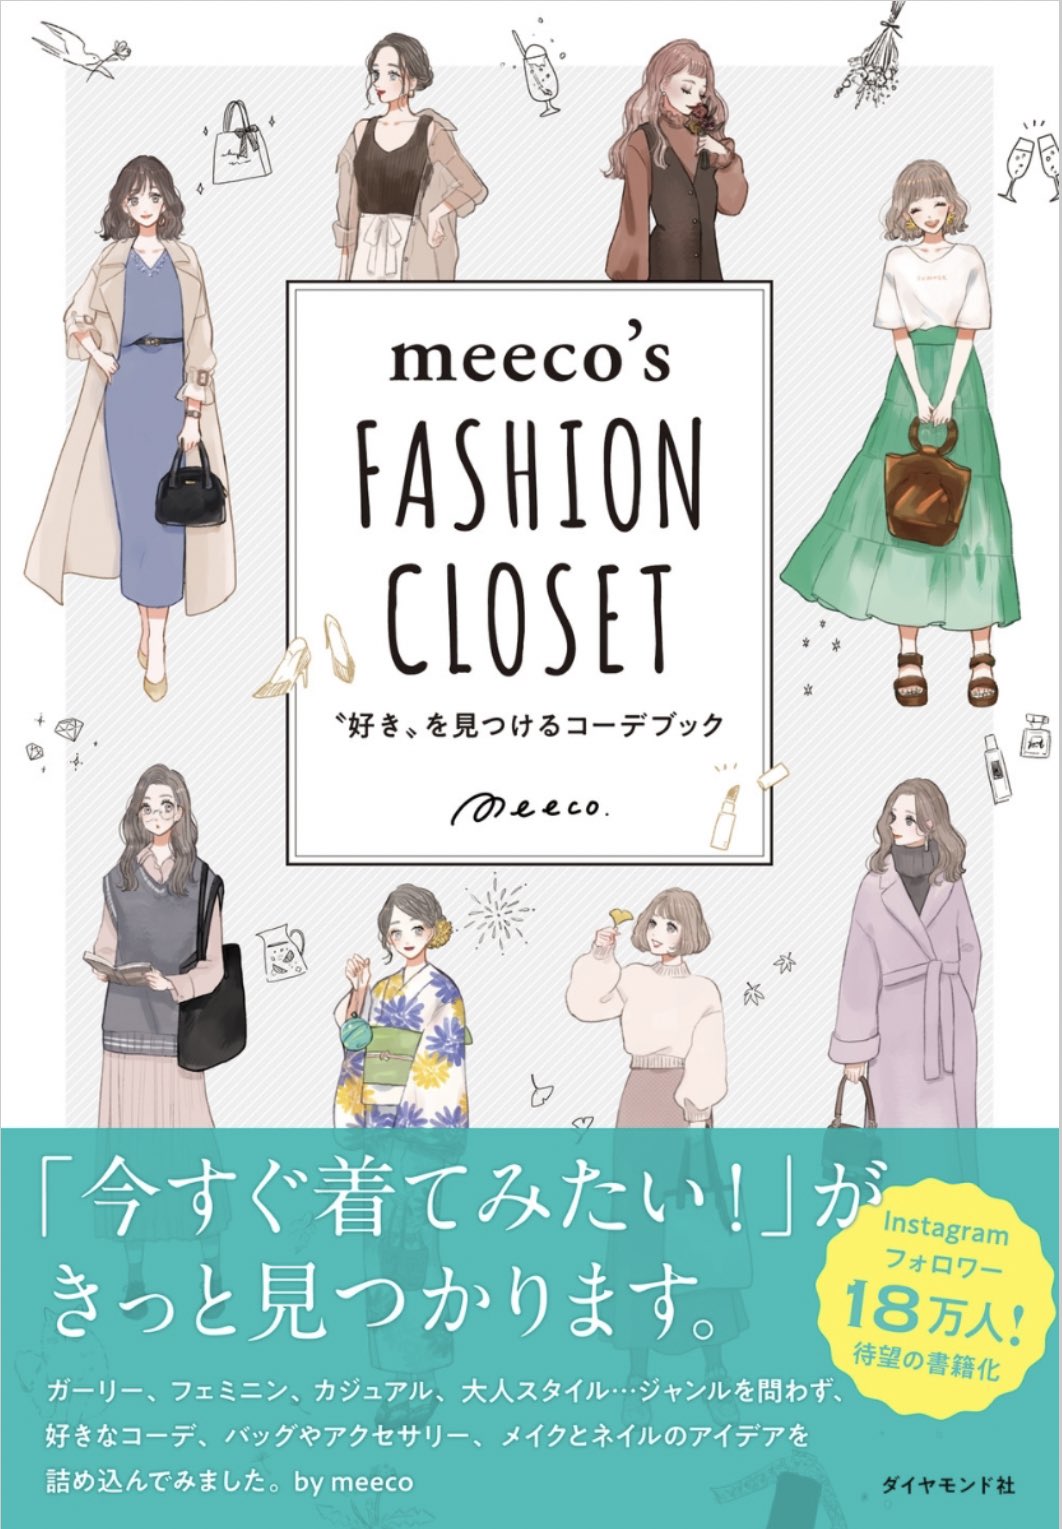 𝐦𝐞𝐞𝐜𝐨 みーこ イラストレーター お知らせ コーデイラスト本 Meeco S Fashion Closet 好き を見つけるコーデブック の表紙画像が公開されました 7 16にダイヤモンド社様より刊行されます よろしくお願いいたします Amazon T Co